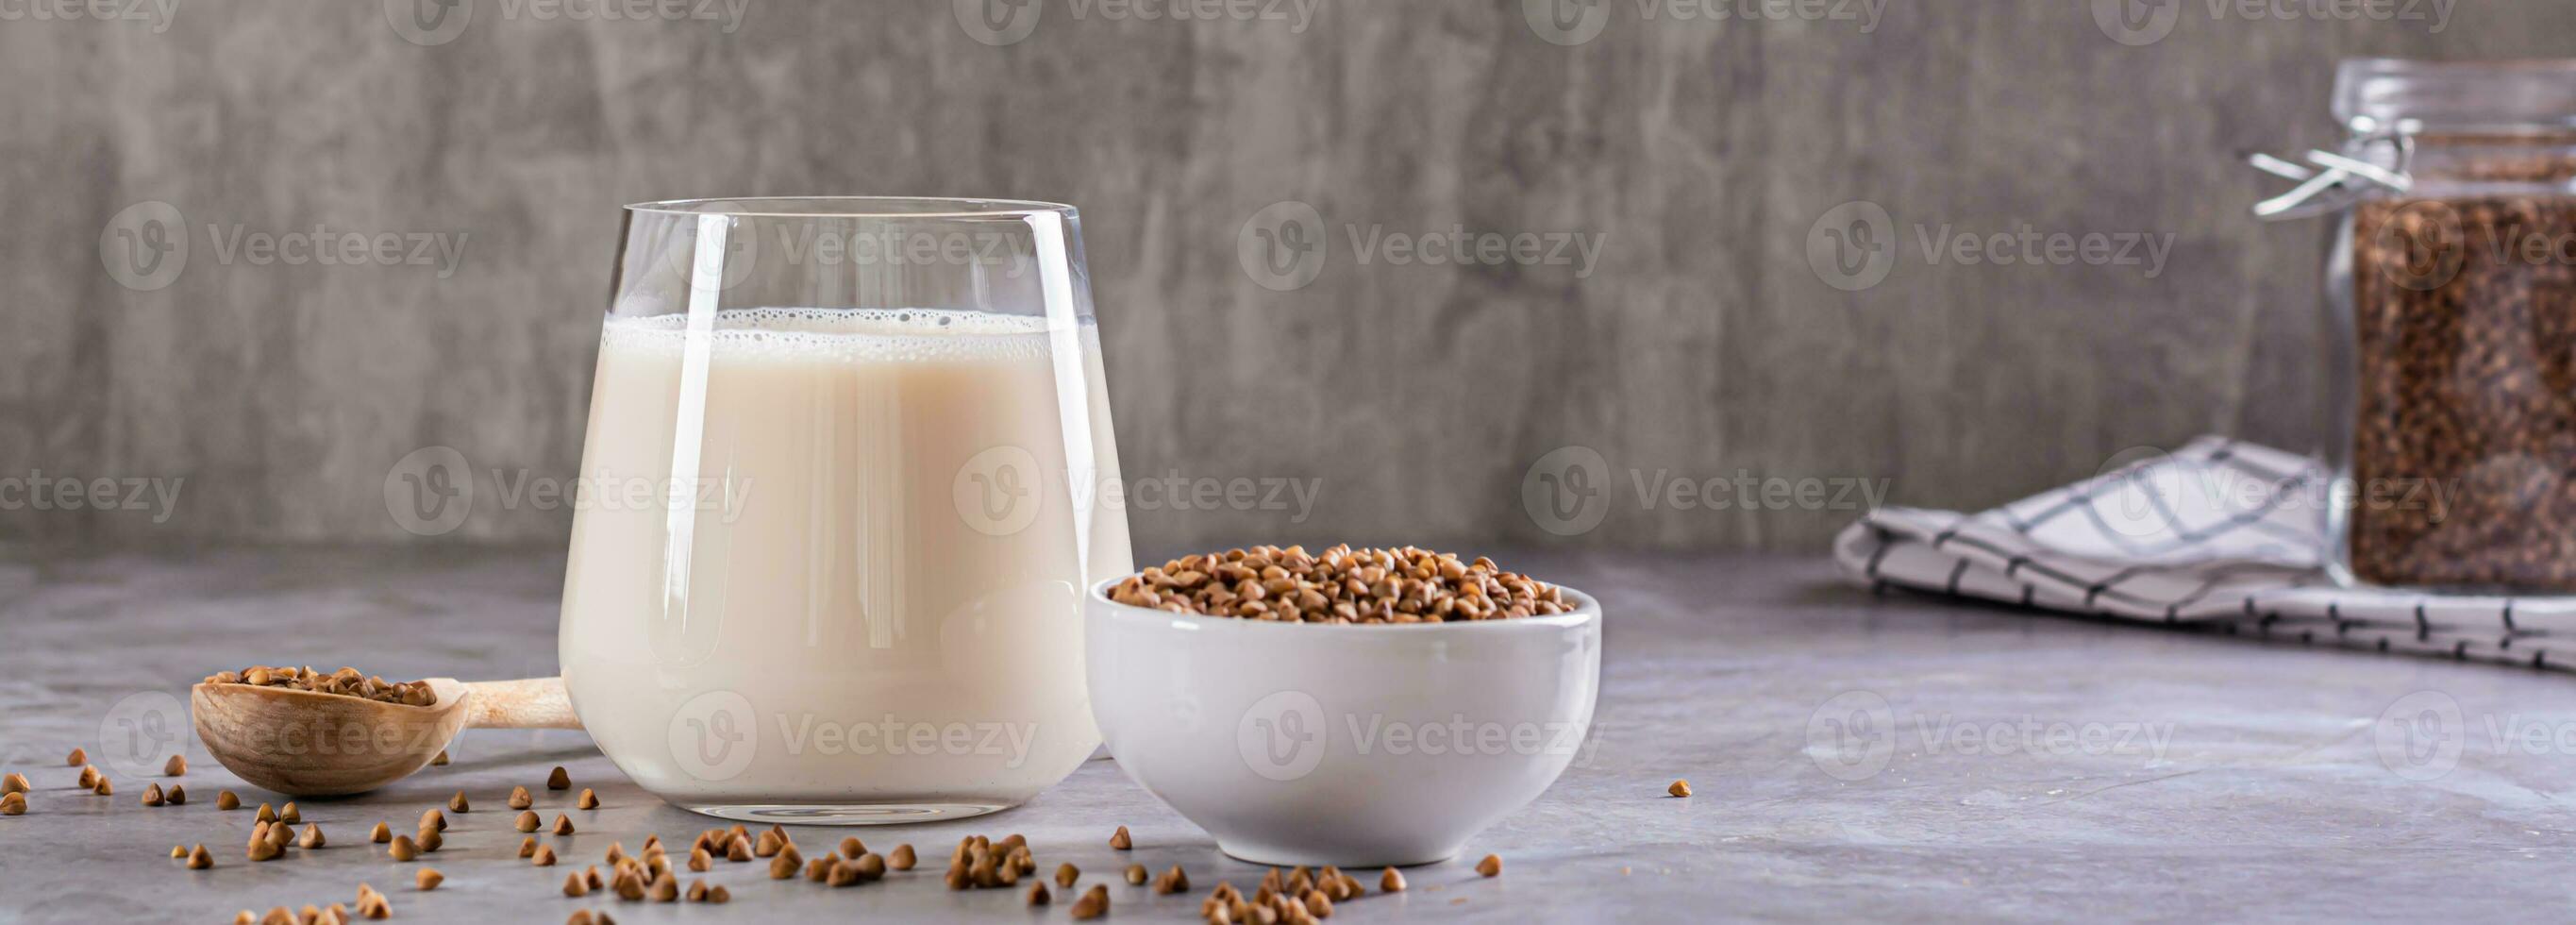 vegano Libre de lácteos alforfón Leche en un vaso y cereales en un cuenco en el mesa web bandera foto